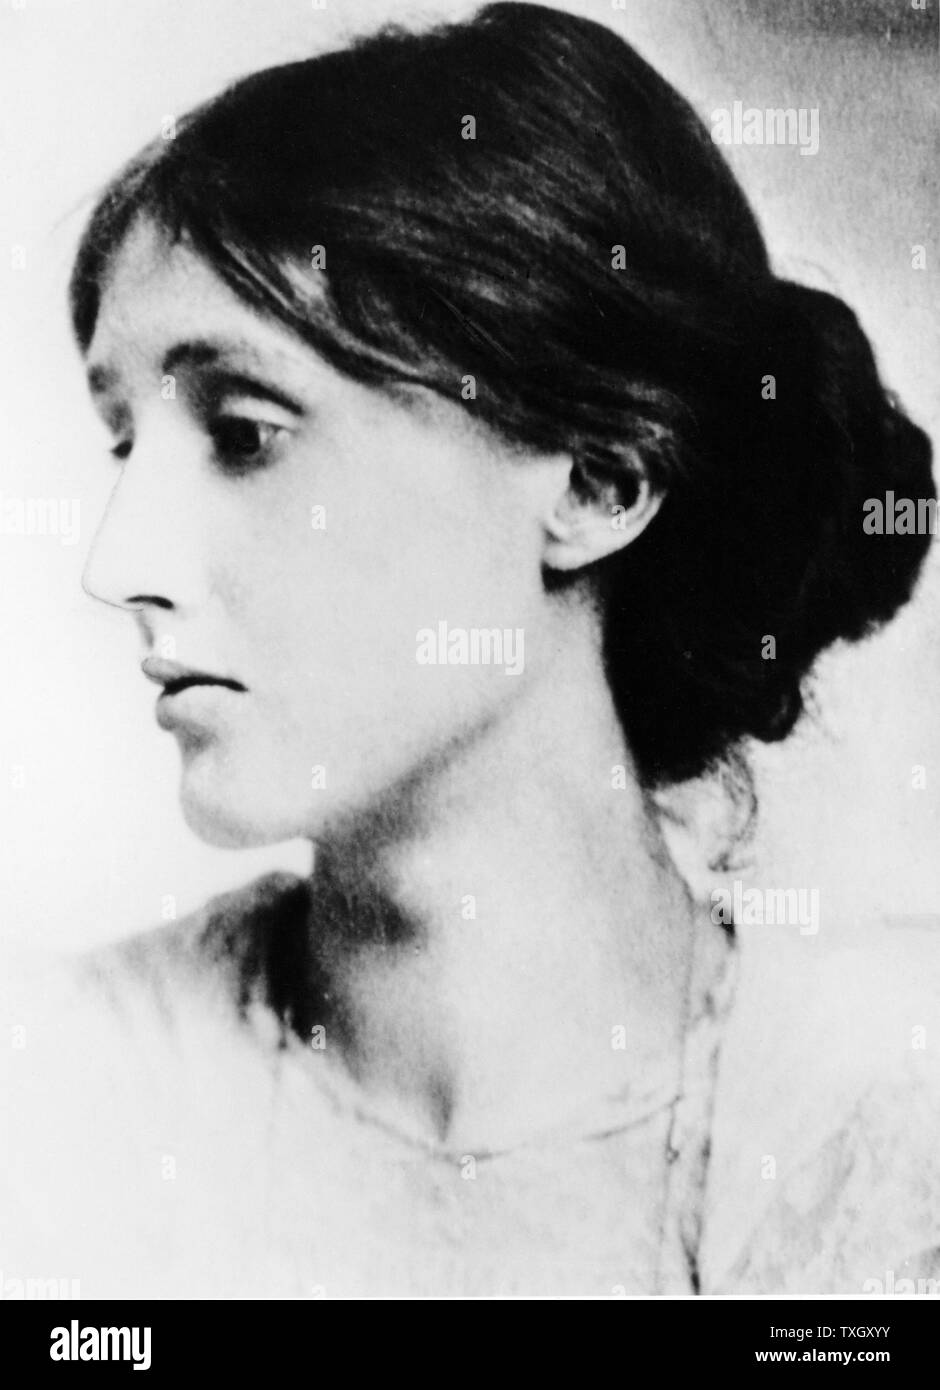 Virginia Woolf (nato Stephen - 1882-1941). Romanziere inglese, saggista e critico Fotografia Foto Stock